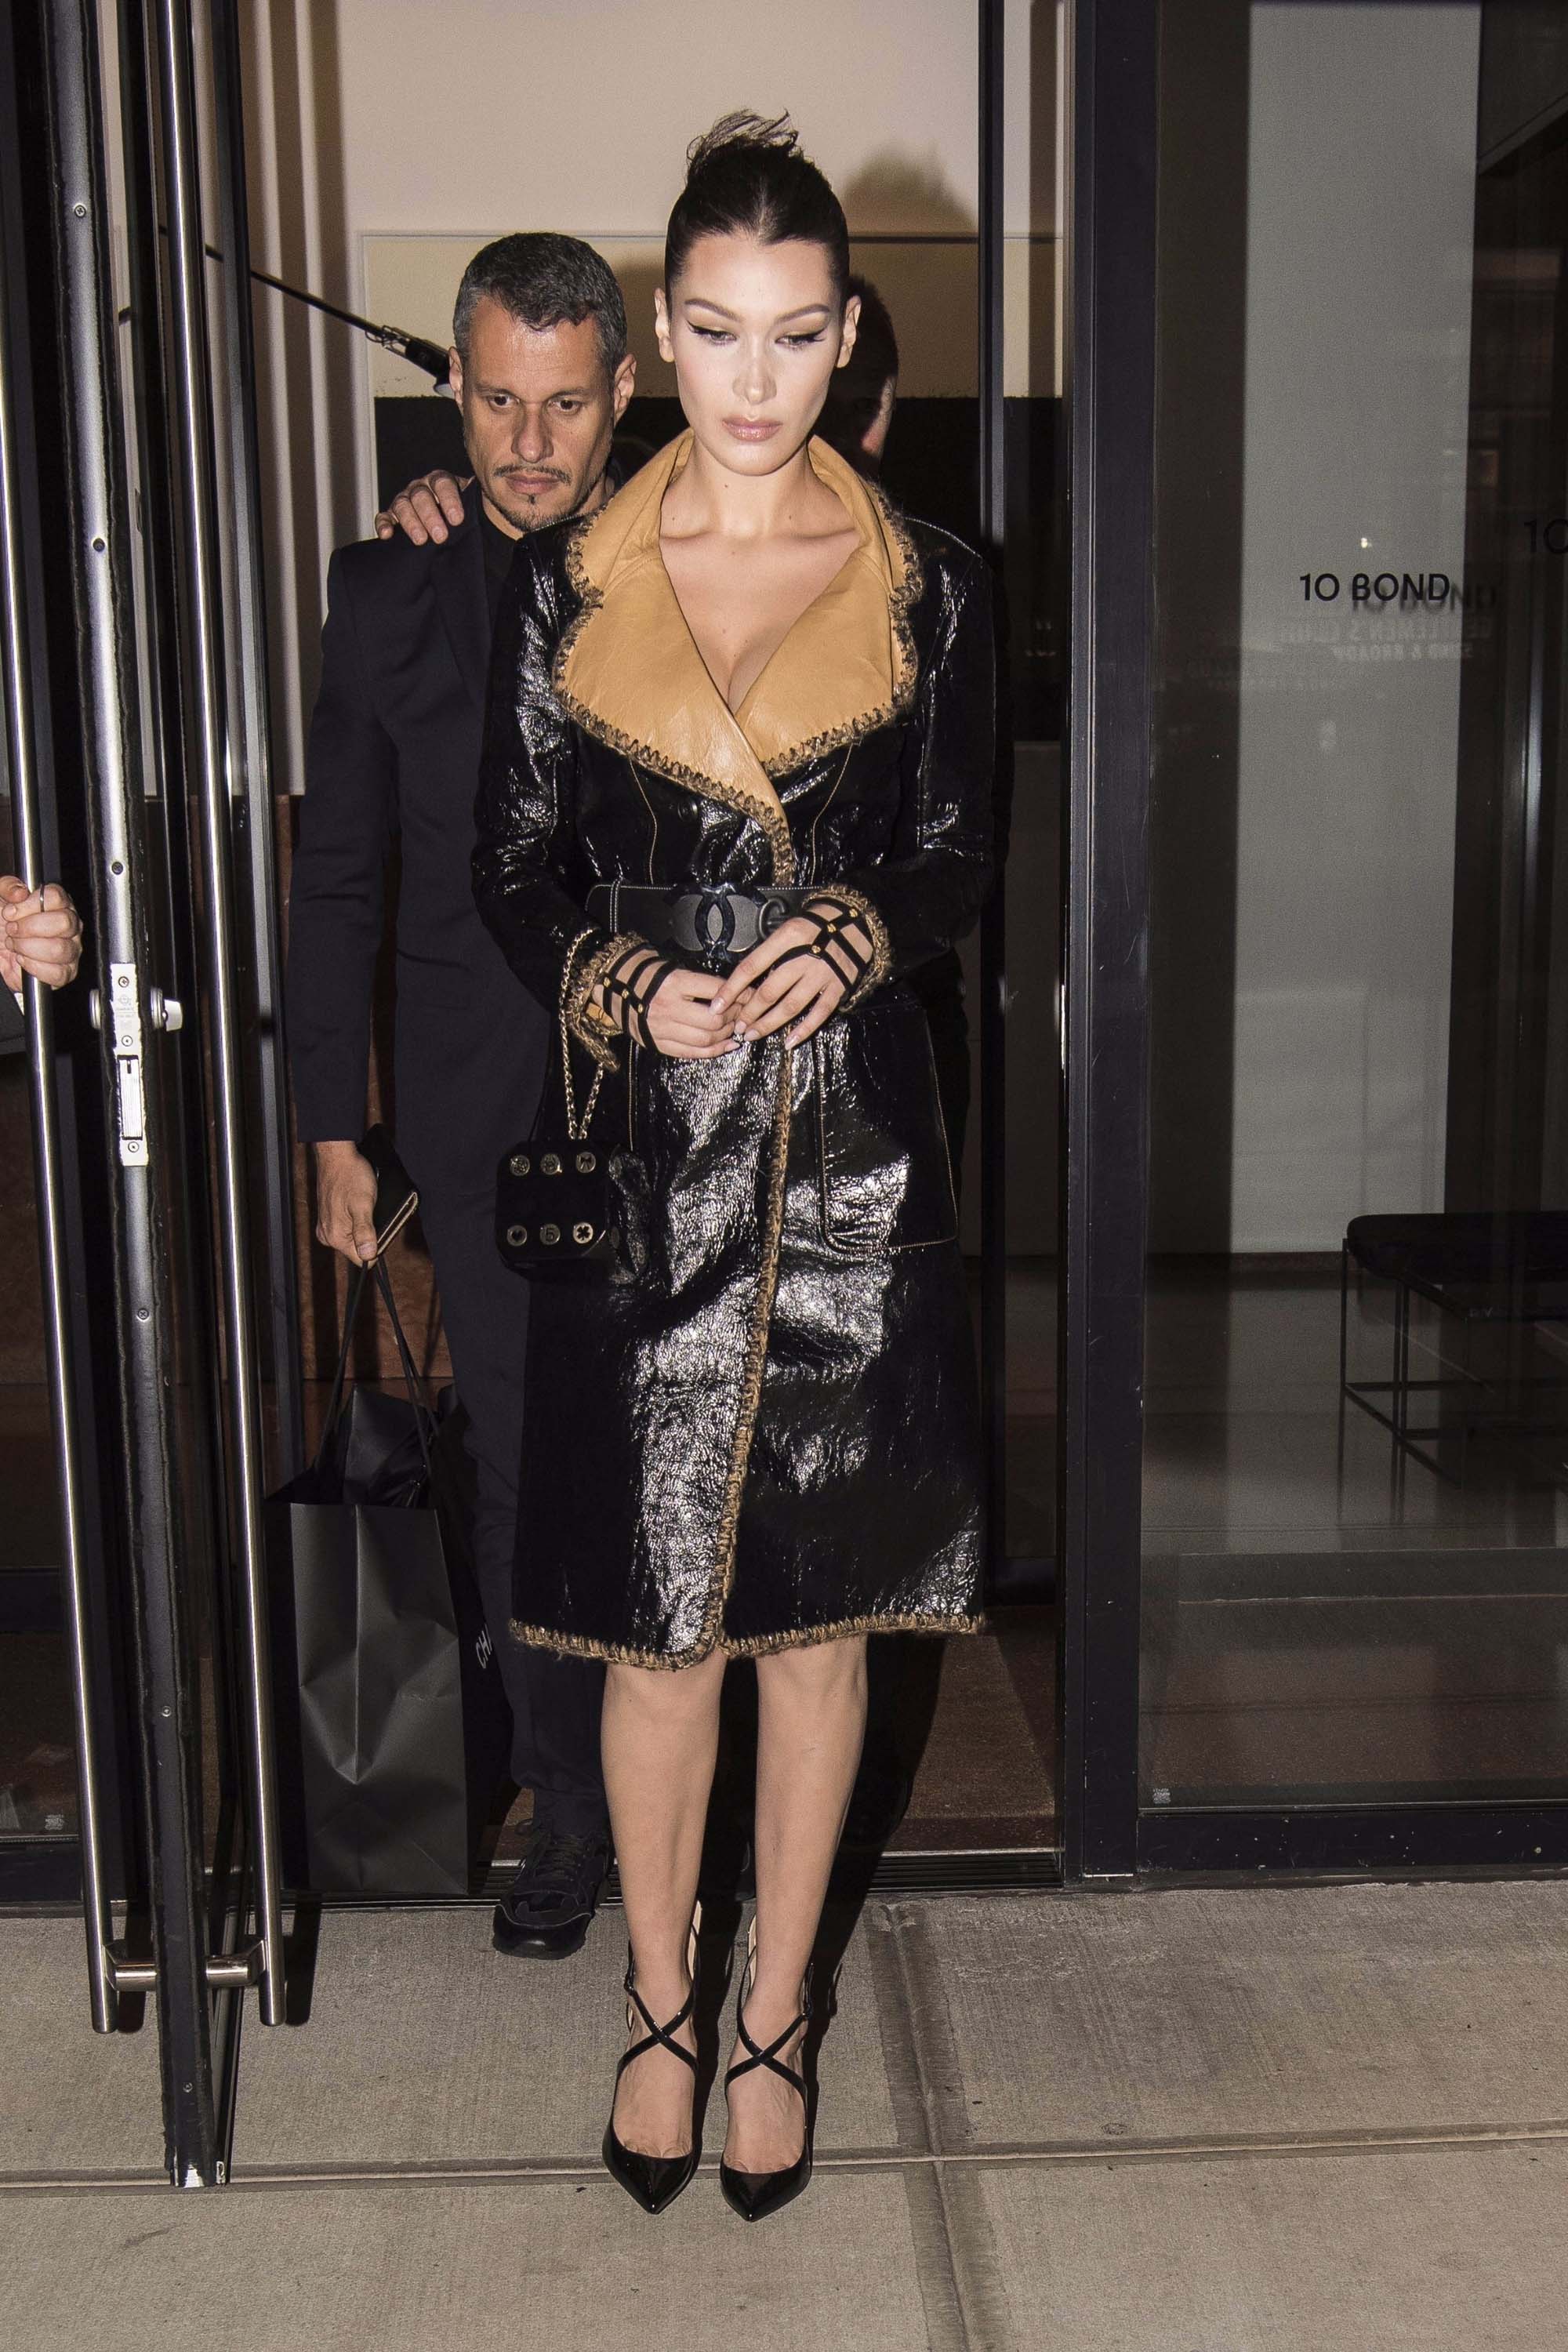 Bella Hadid attends the V-Magazin Dinner